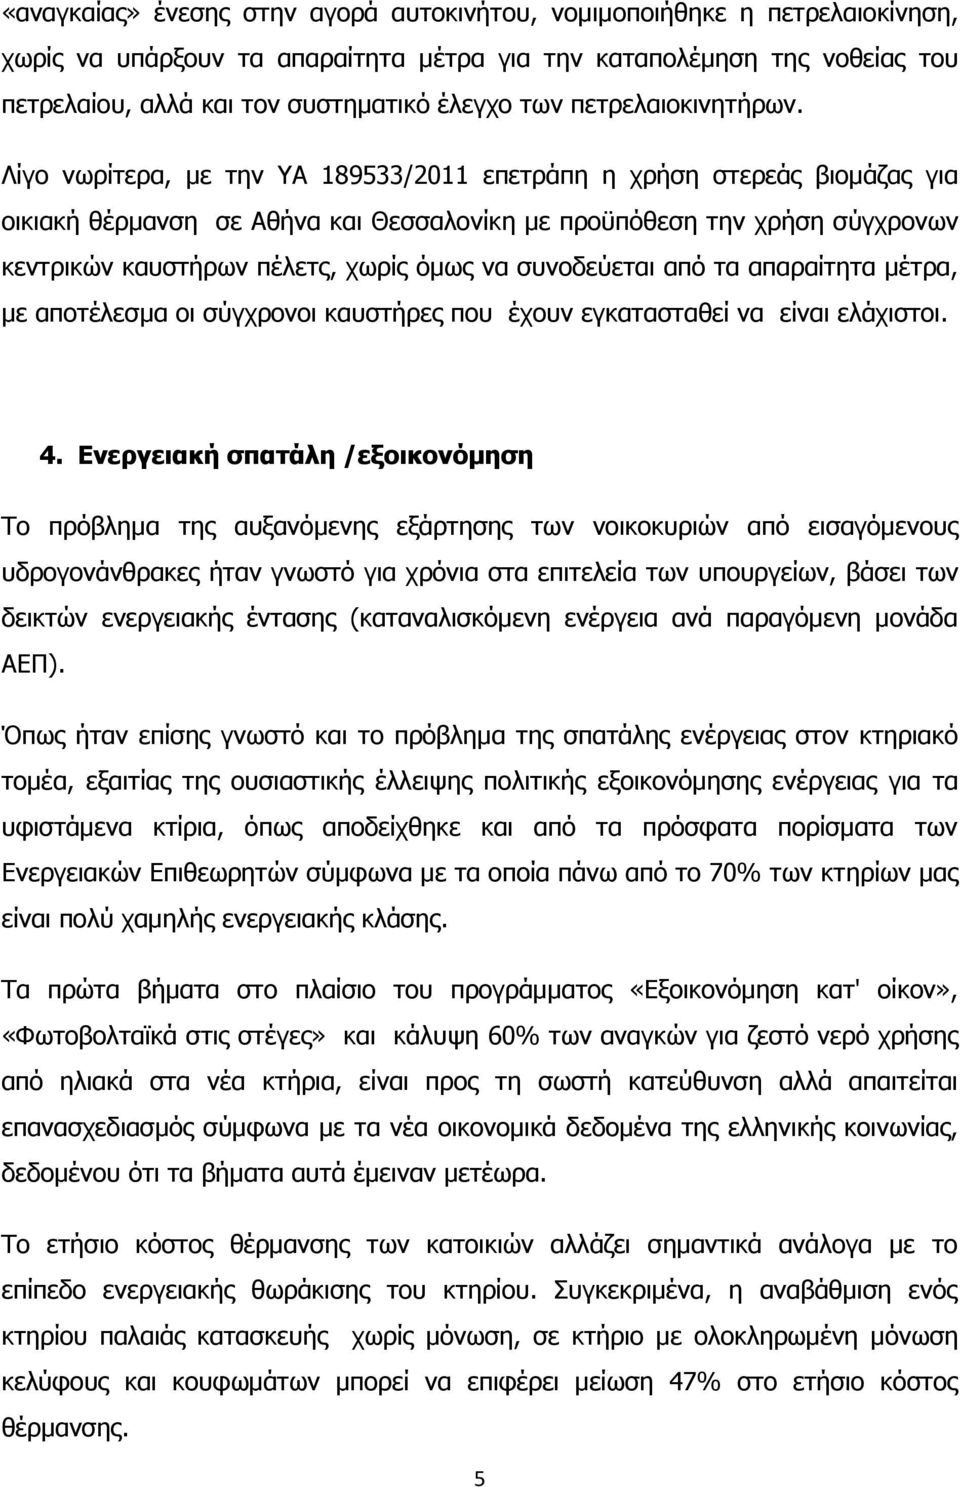 Λίγο νωρίτερα, με την ΥΑ 189533/2011 επετράπη η χρήση στερεάς βιομάζας για οικιακή θέρμανση σε Αθήνα και Θεσσαλονίκη με προϋπόθεση την χρήση σύγχρονων κεντρικών καυστήρων πέλετς, χωρίς όμως να